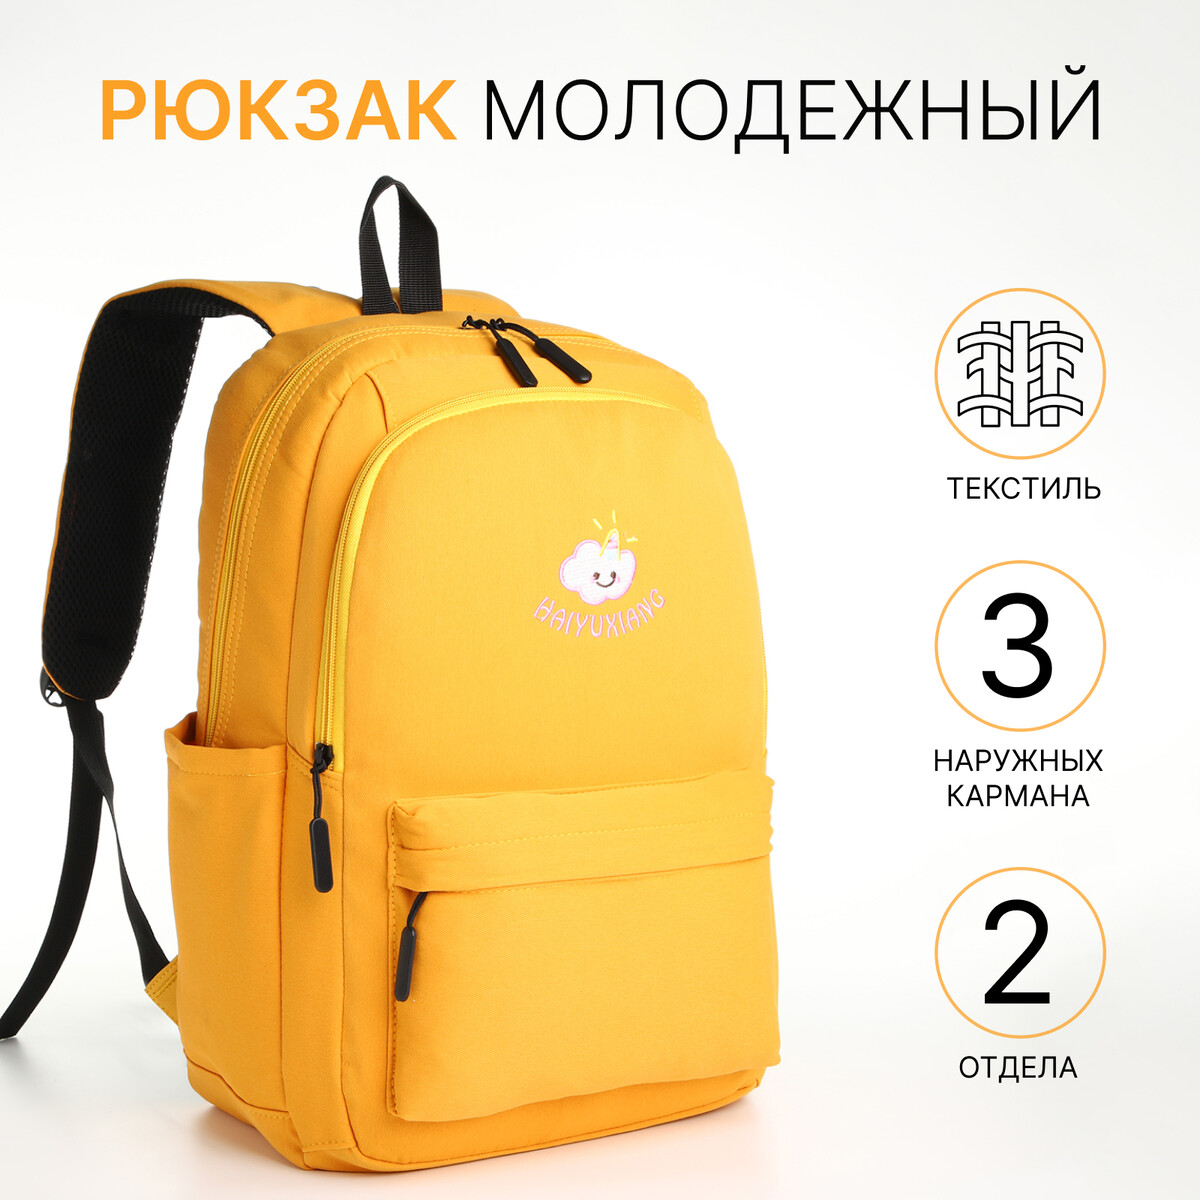 Рюкзак школьный из текстиля на молнии, 2 отдела, 3 кармана, цвет желтый